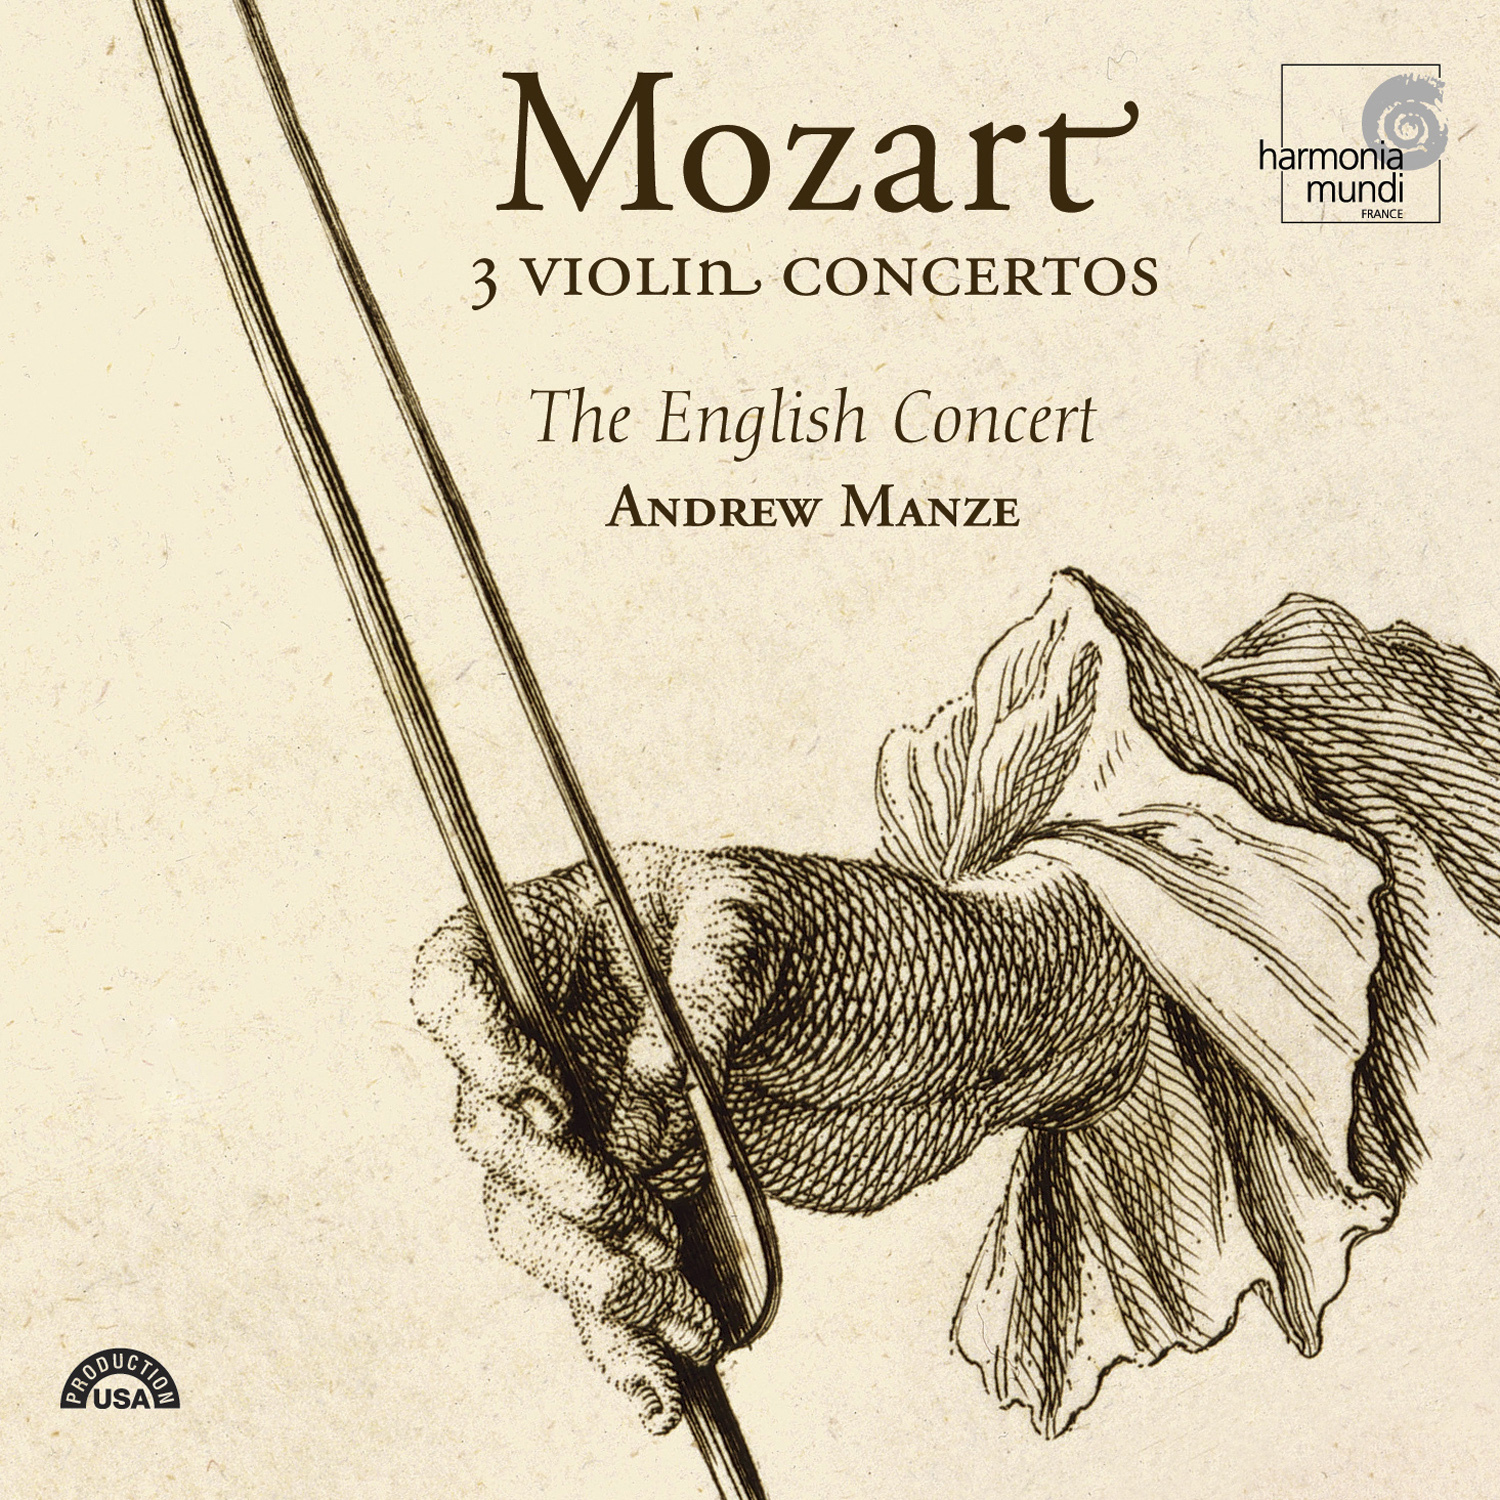 Violin Concerto No. 5 in A major, K. 219: II. Adagio